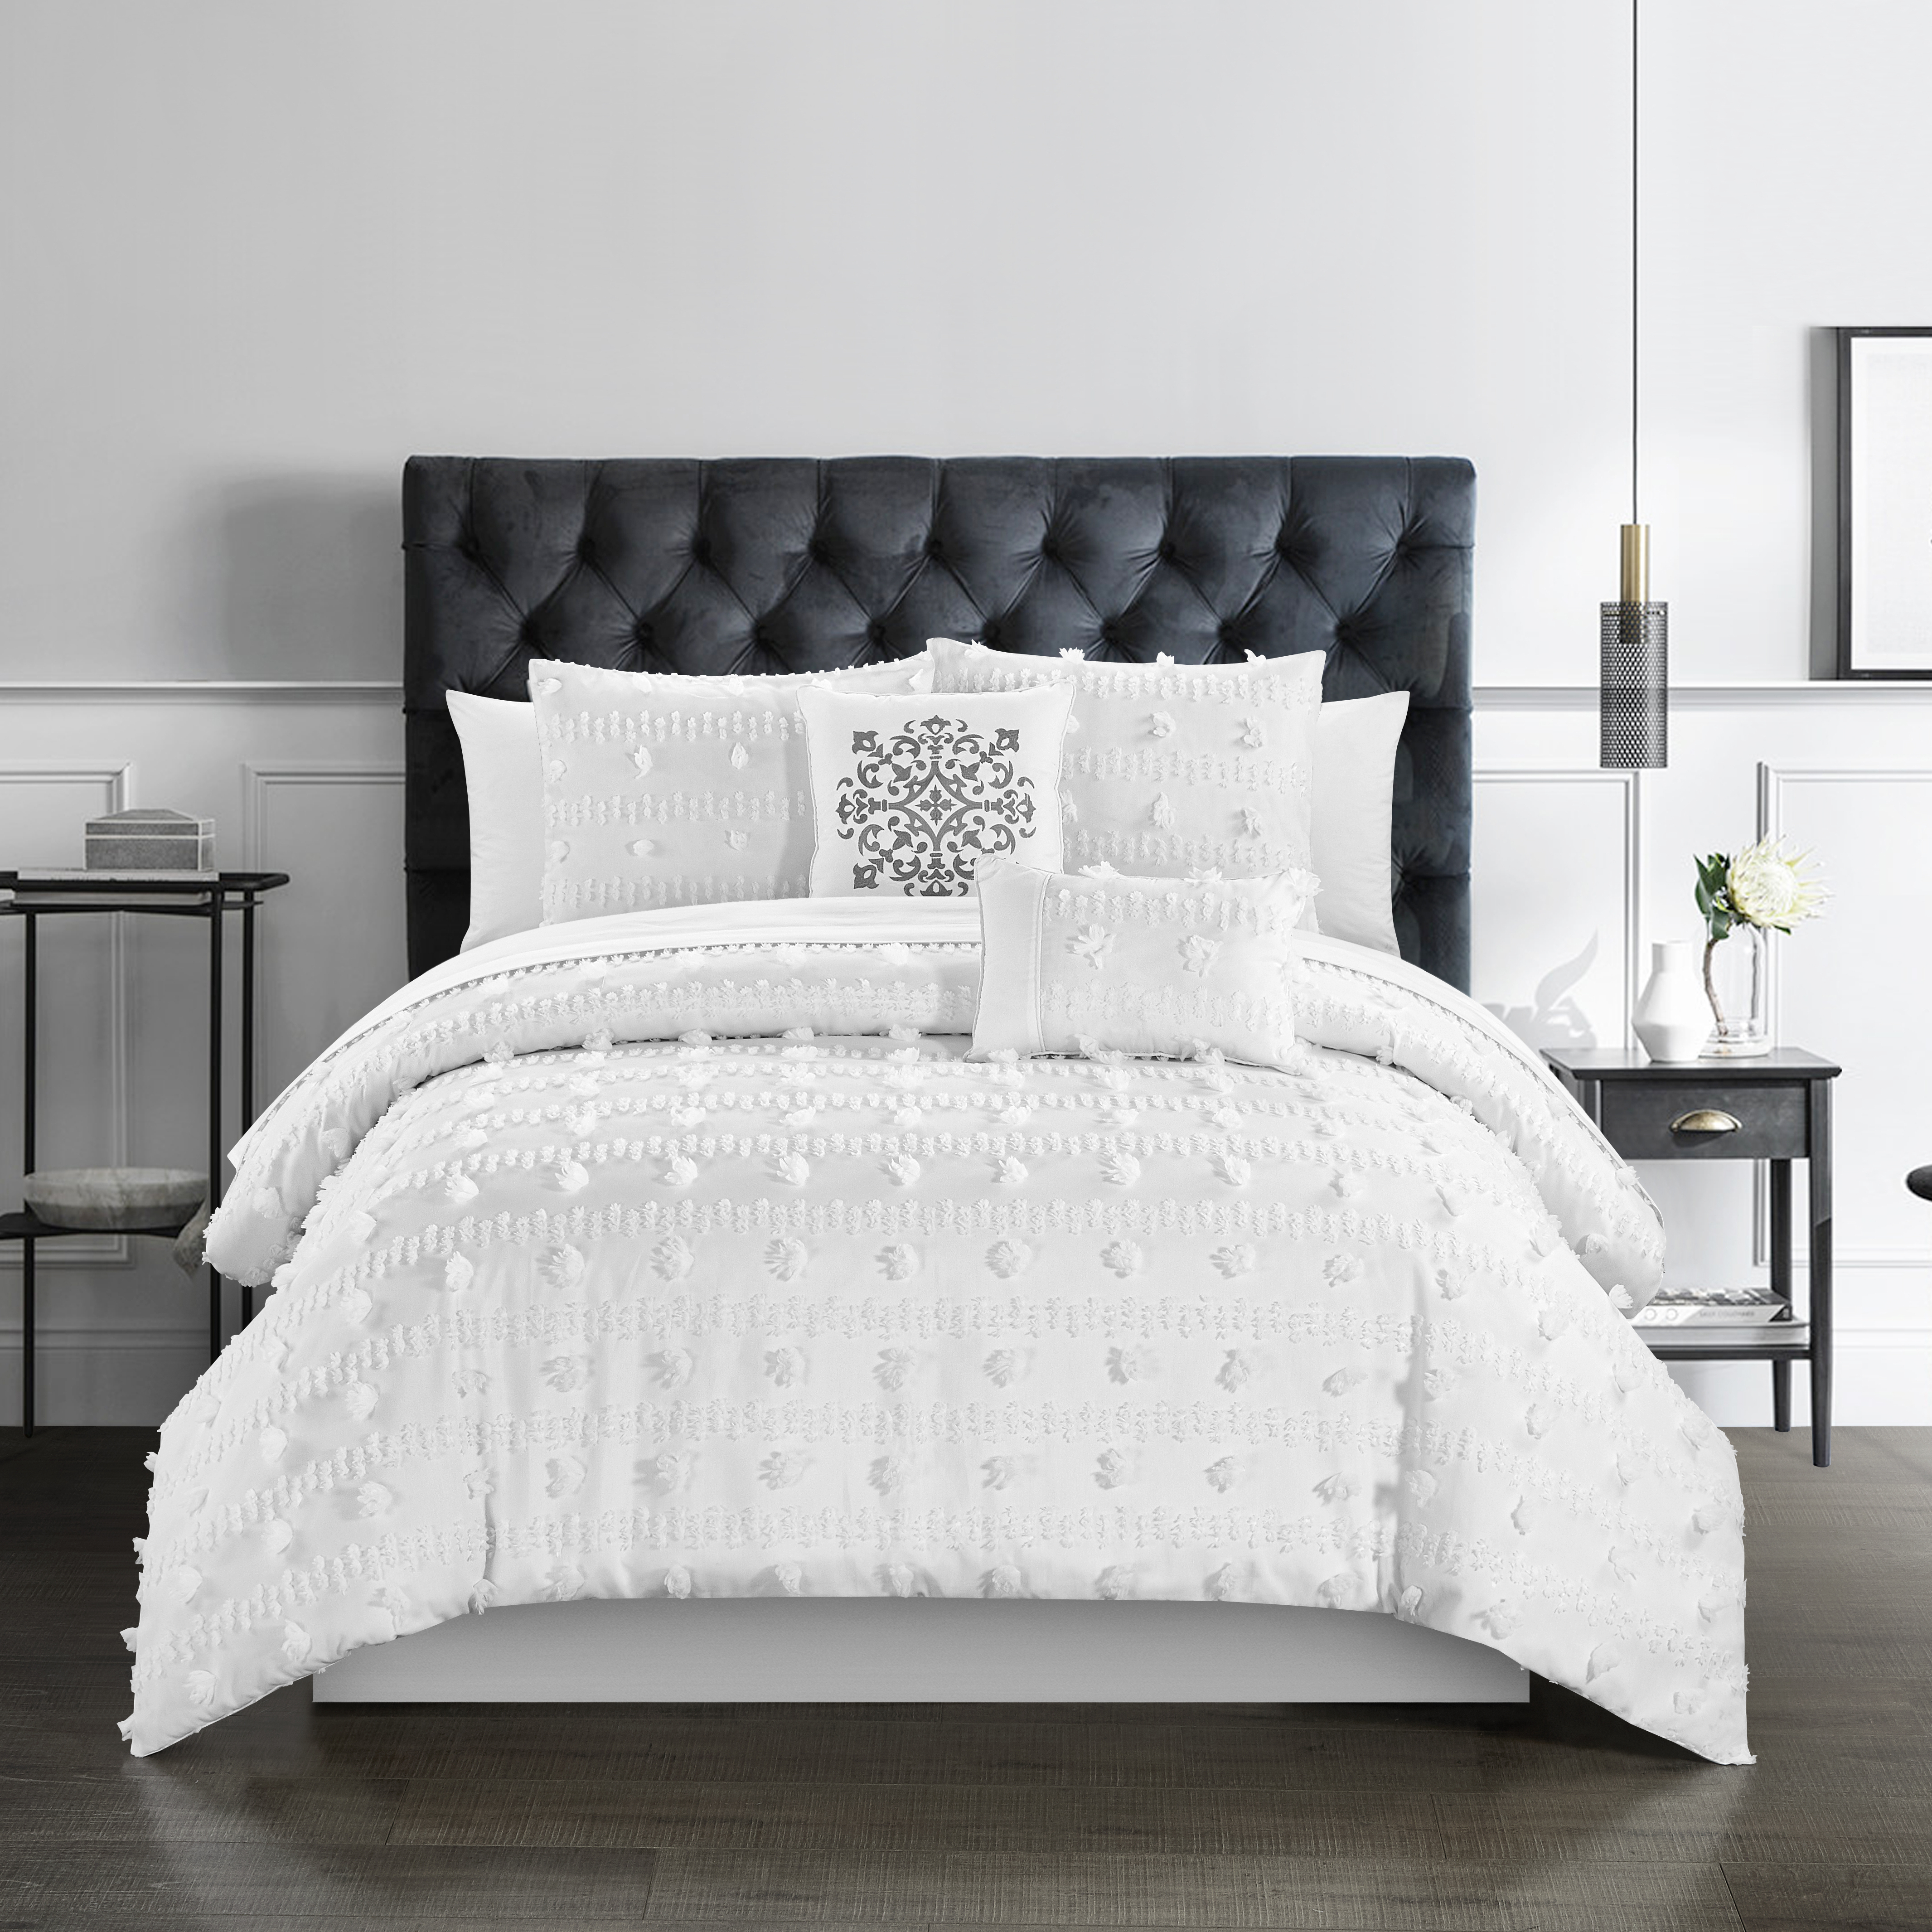 Ahtisa 5 Piece Comforter Set Jacquard Floral Applique Design Bedding - Grey, King